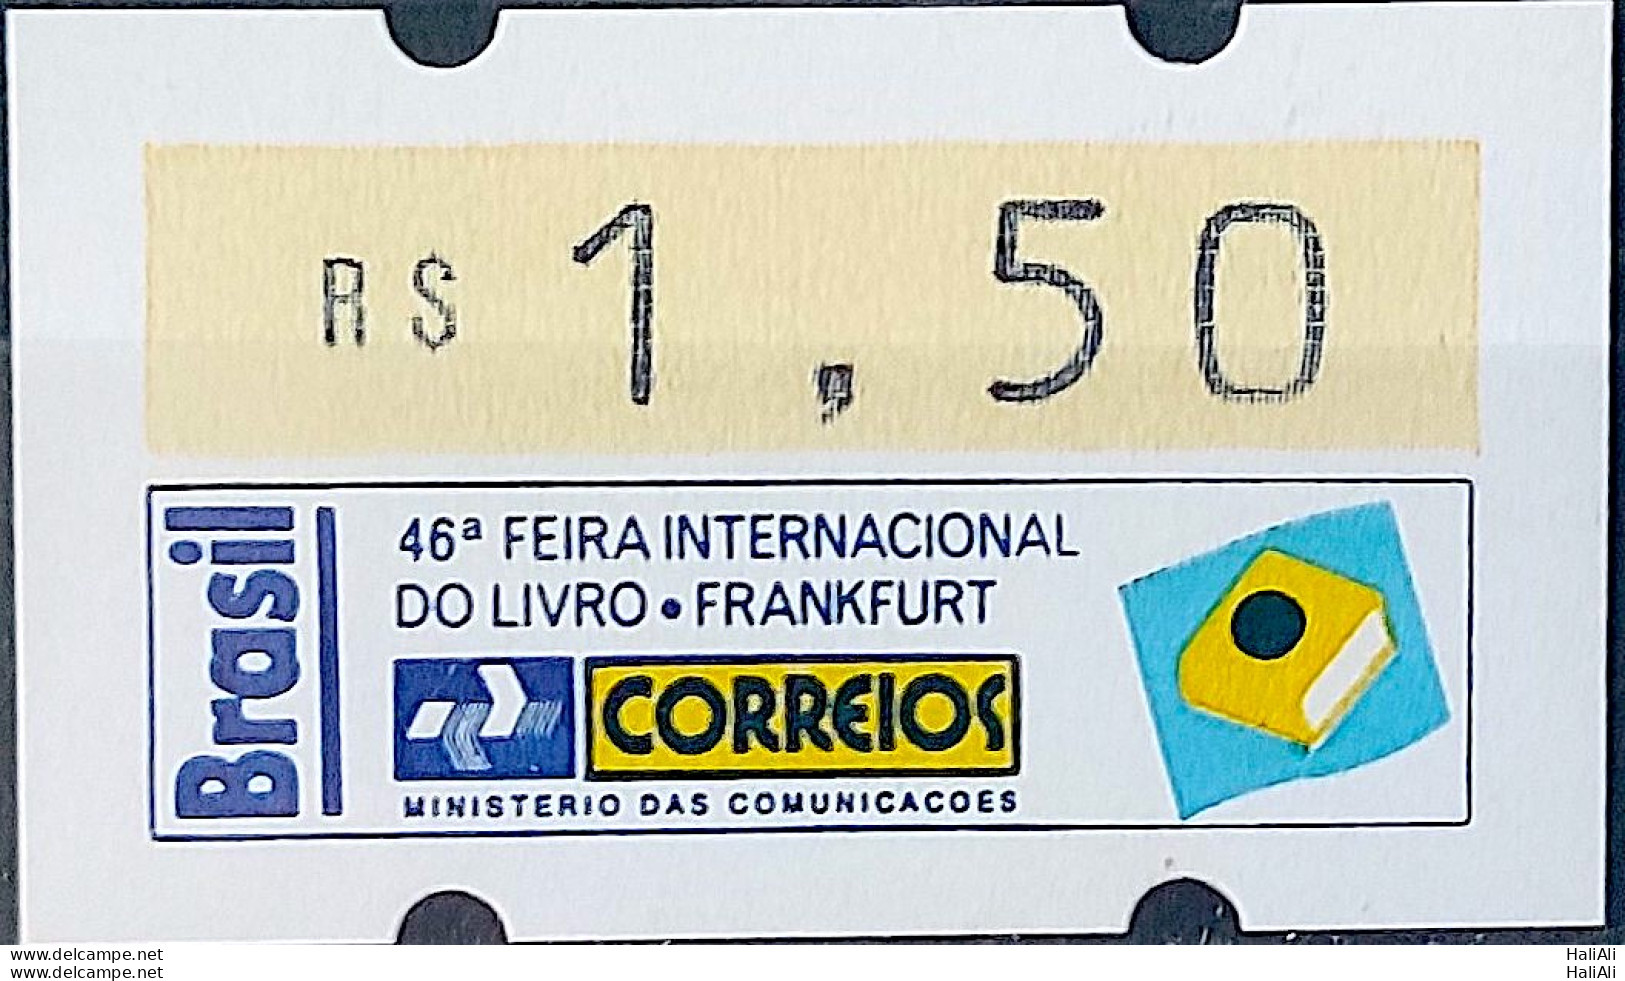 SE 06A Brazil Stamp Label Etiqueta Etichetta Automato Frankfurt 1994 - Vignettes D'affranchissement (Frama)